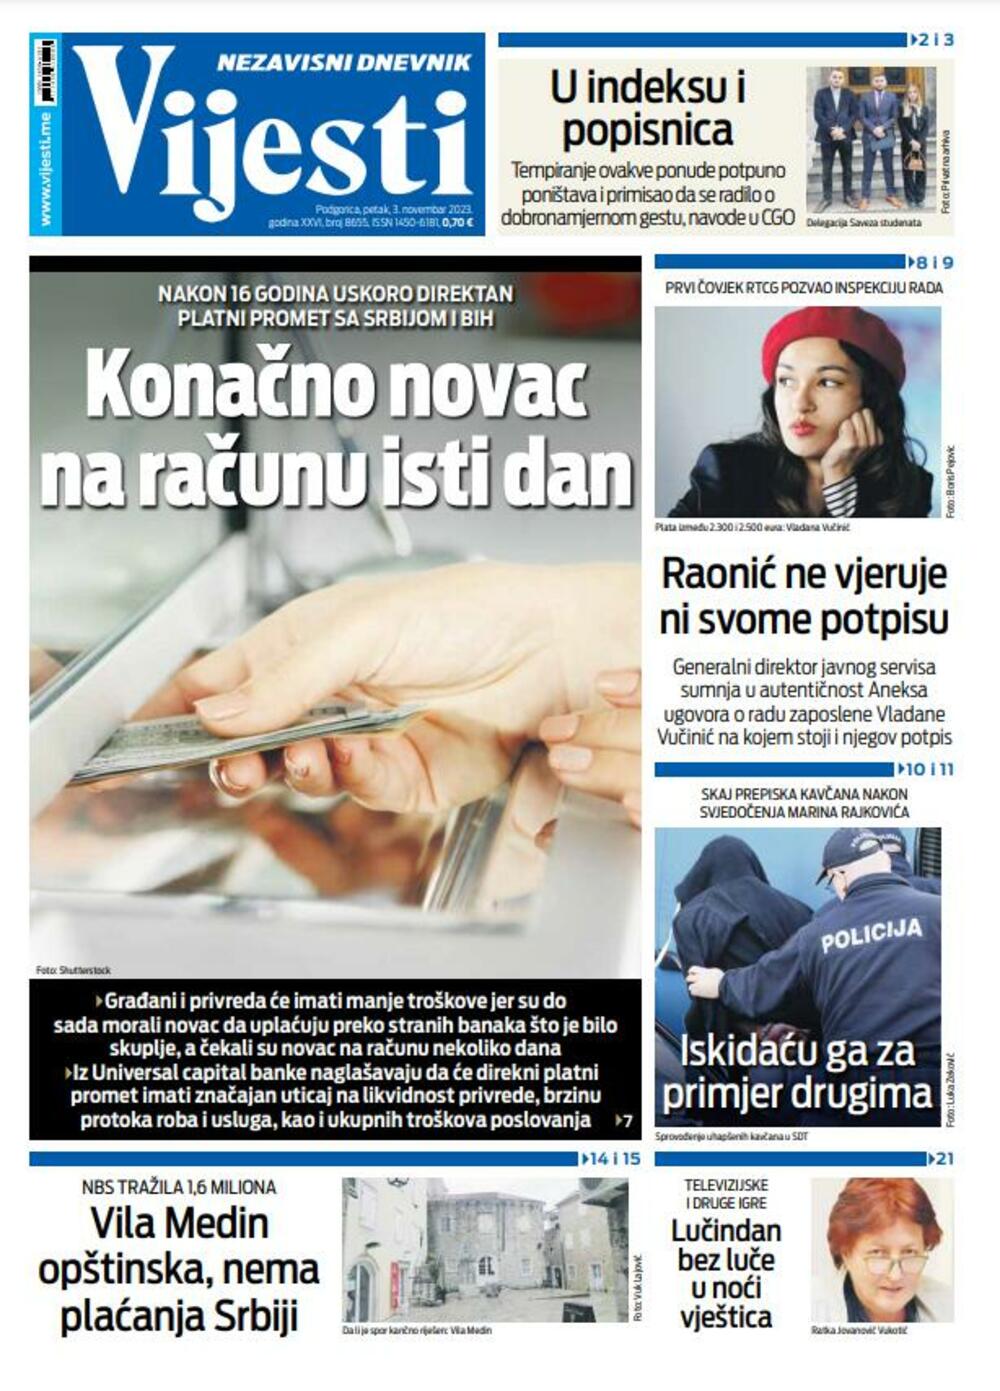 Naslovna strana "Vijesti" za 3. novembar 2023., Foto: Vijesti